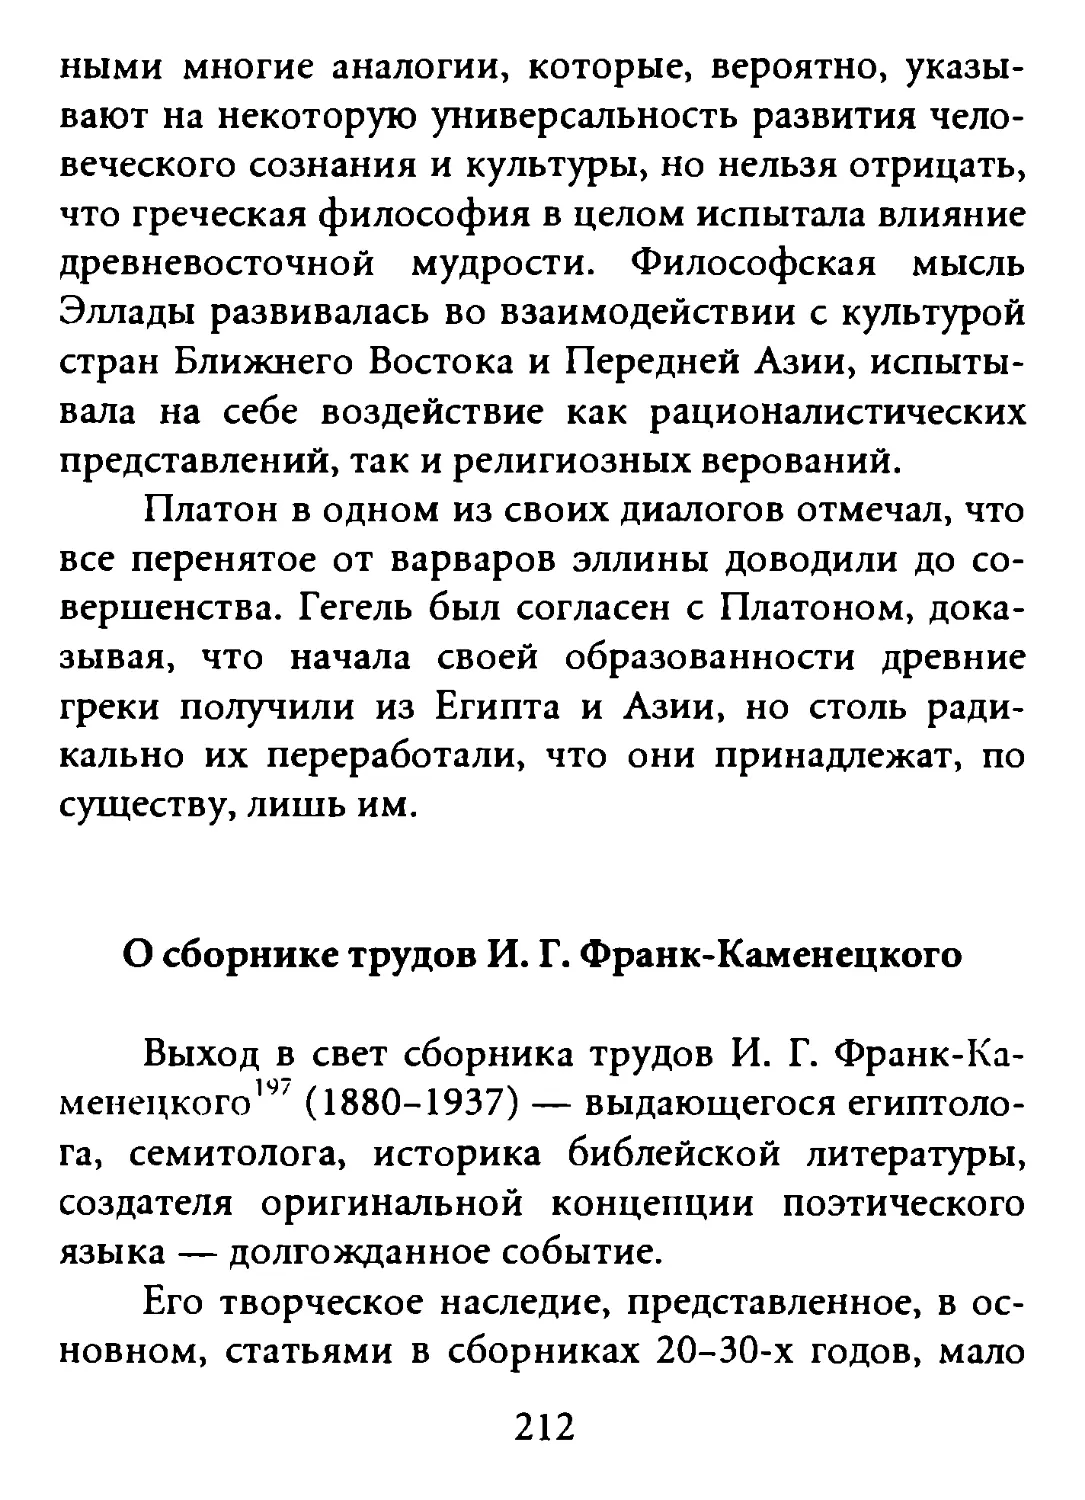 О сборнике трудов И.Г. Франк-Каменецкого